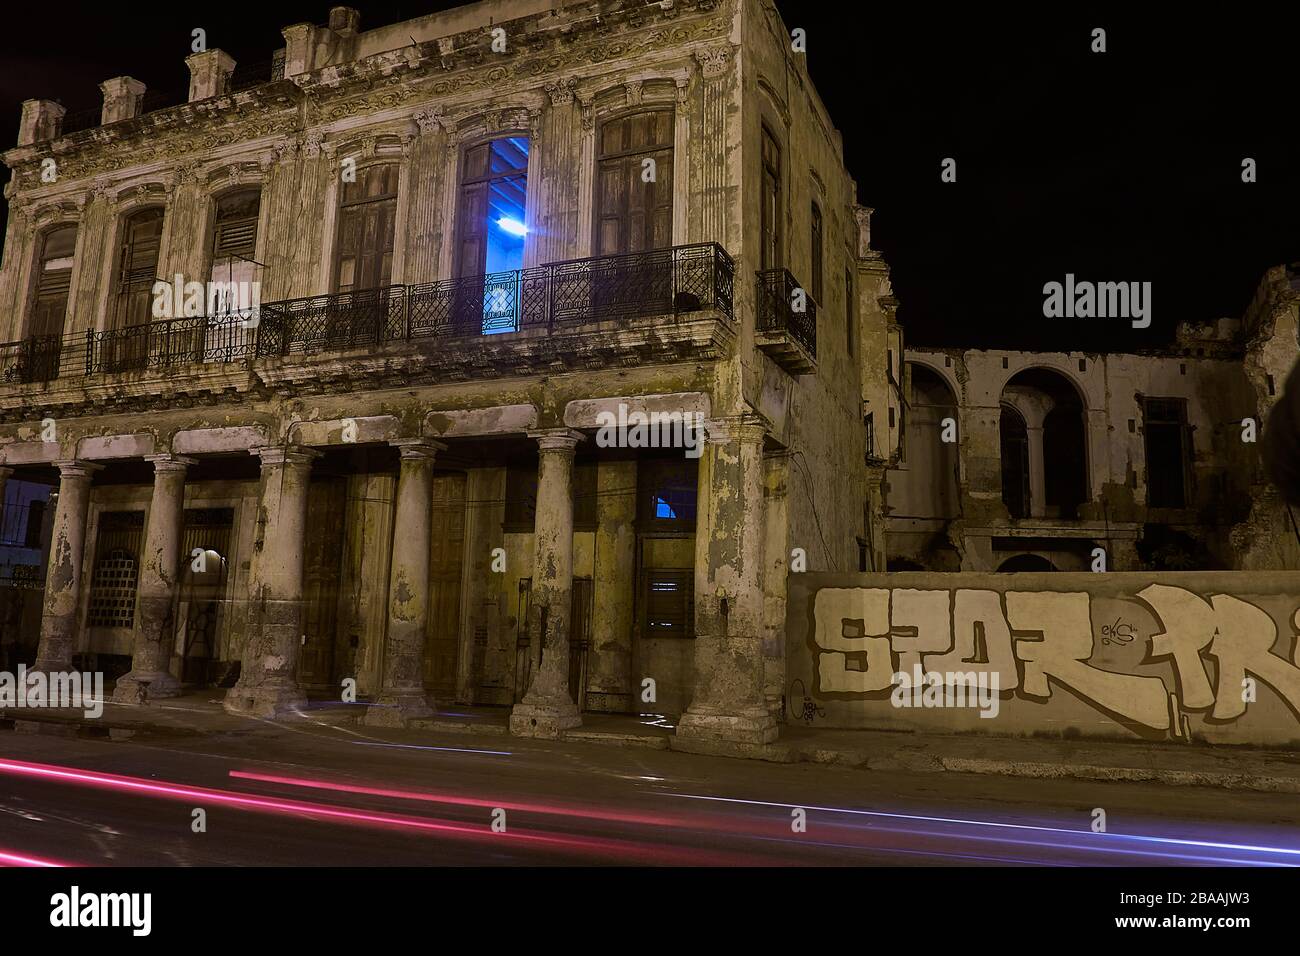 Nachtansicht des beleuchteten Blockgebäudes mit Streifen vorbeifahrender Ampel Stockfoto